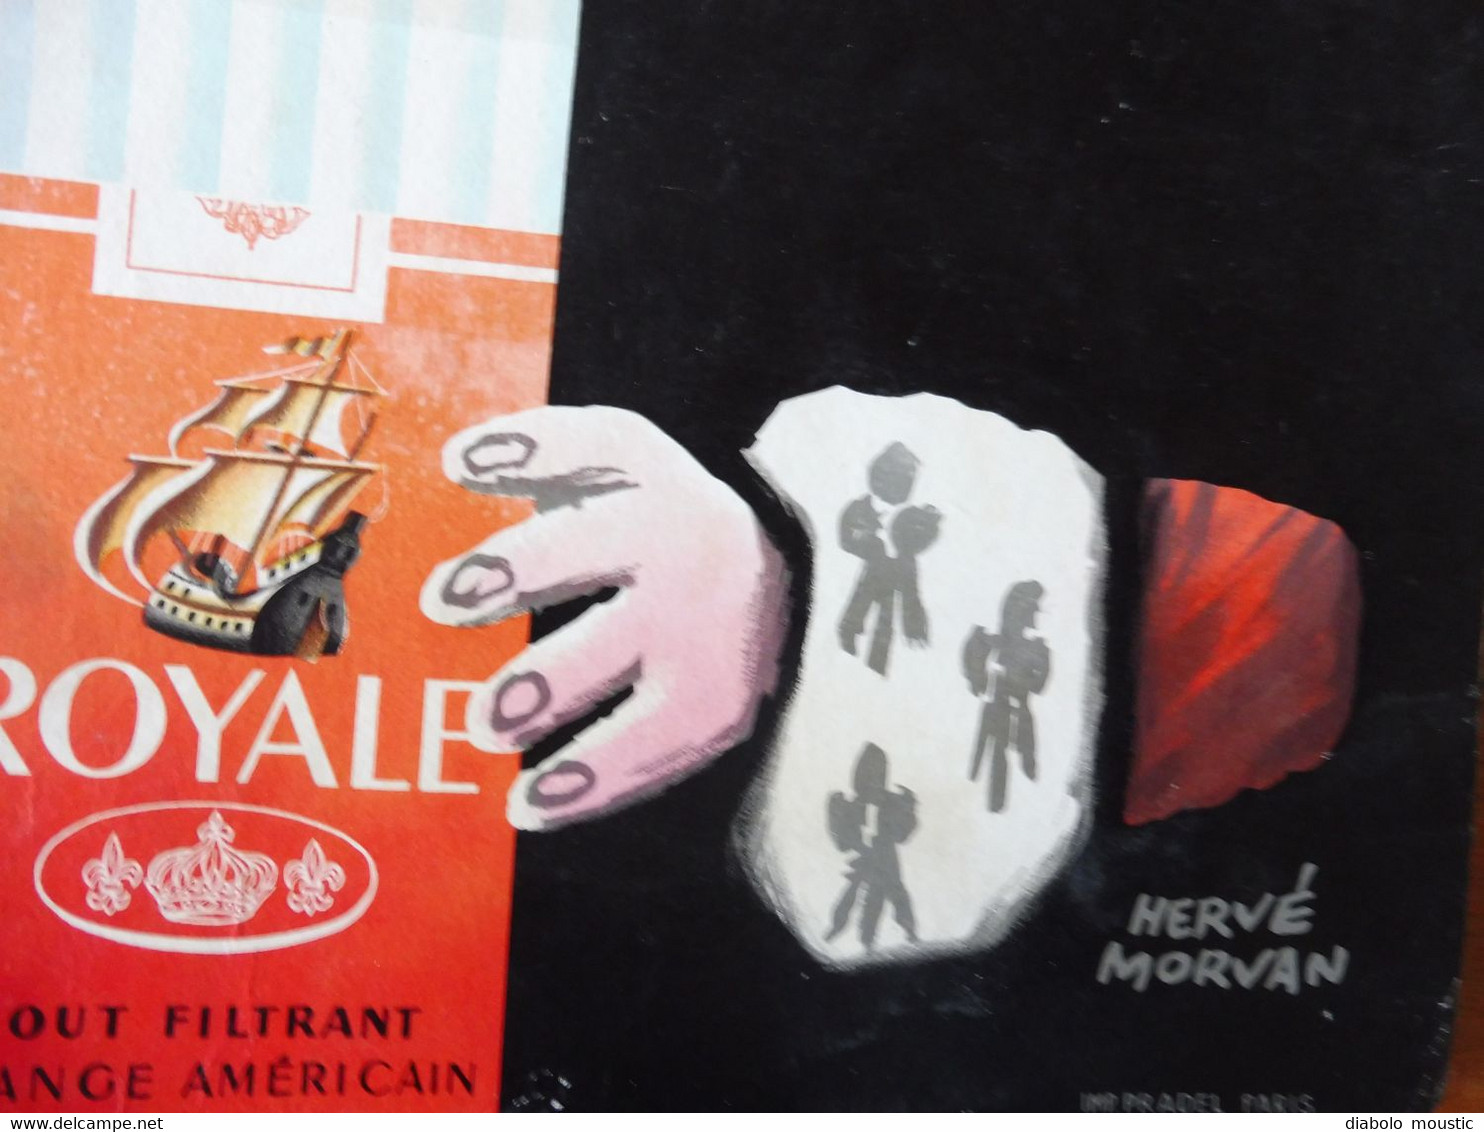 Carton Publicitaire ROYALE cigarette par excellence   Dessin par Hervé Morvan  (dimensions 40cm x 30cm)